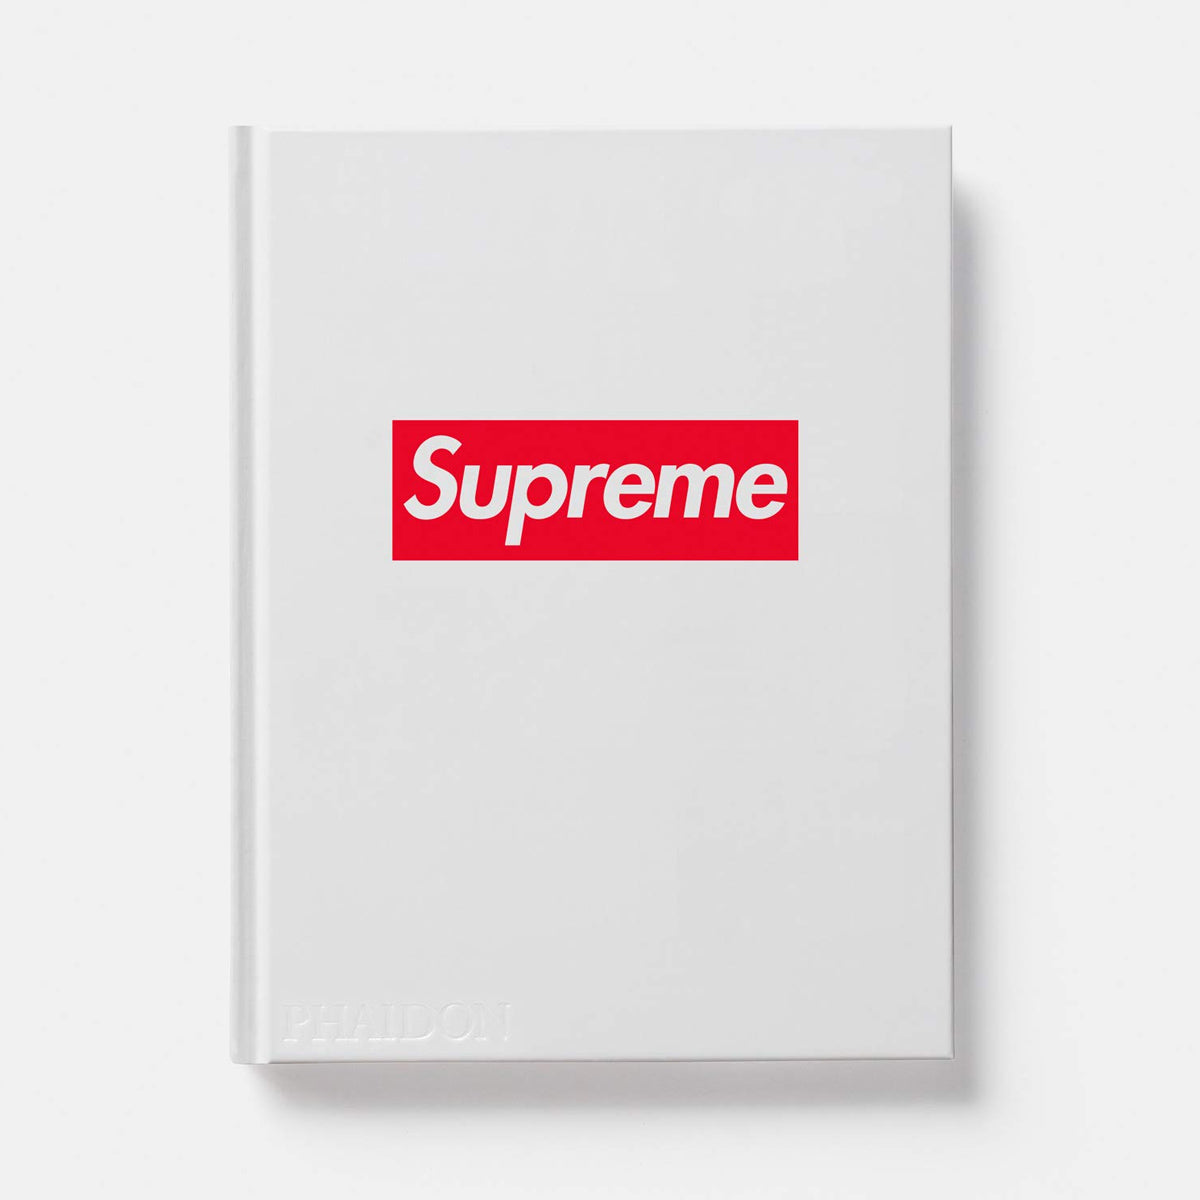 Supreme book